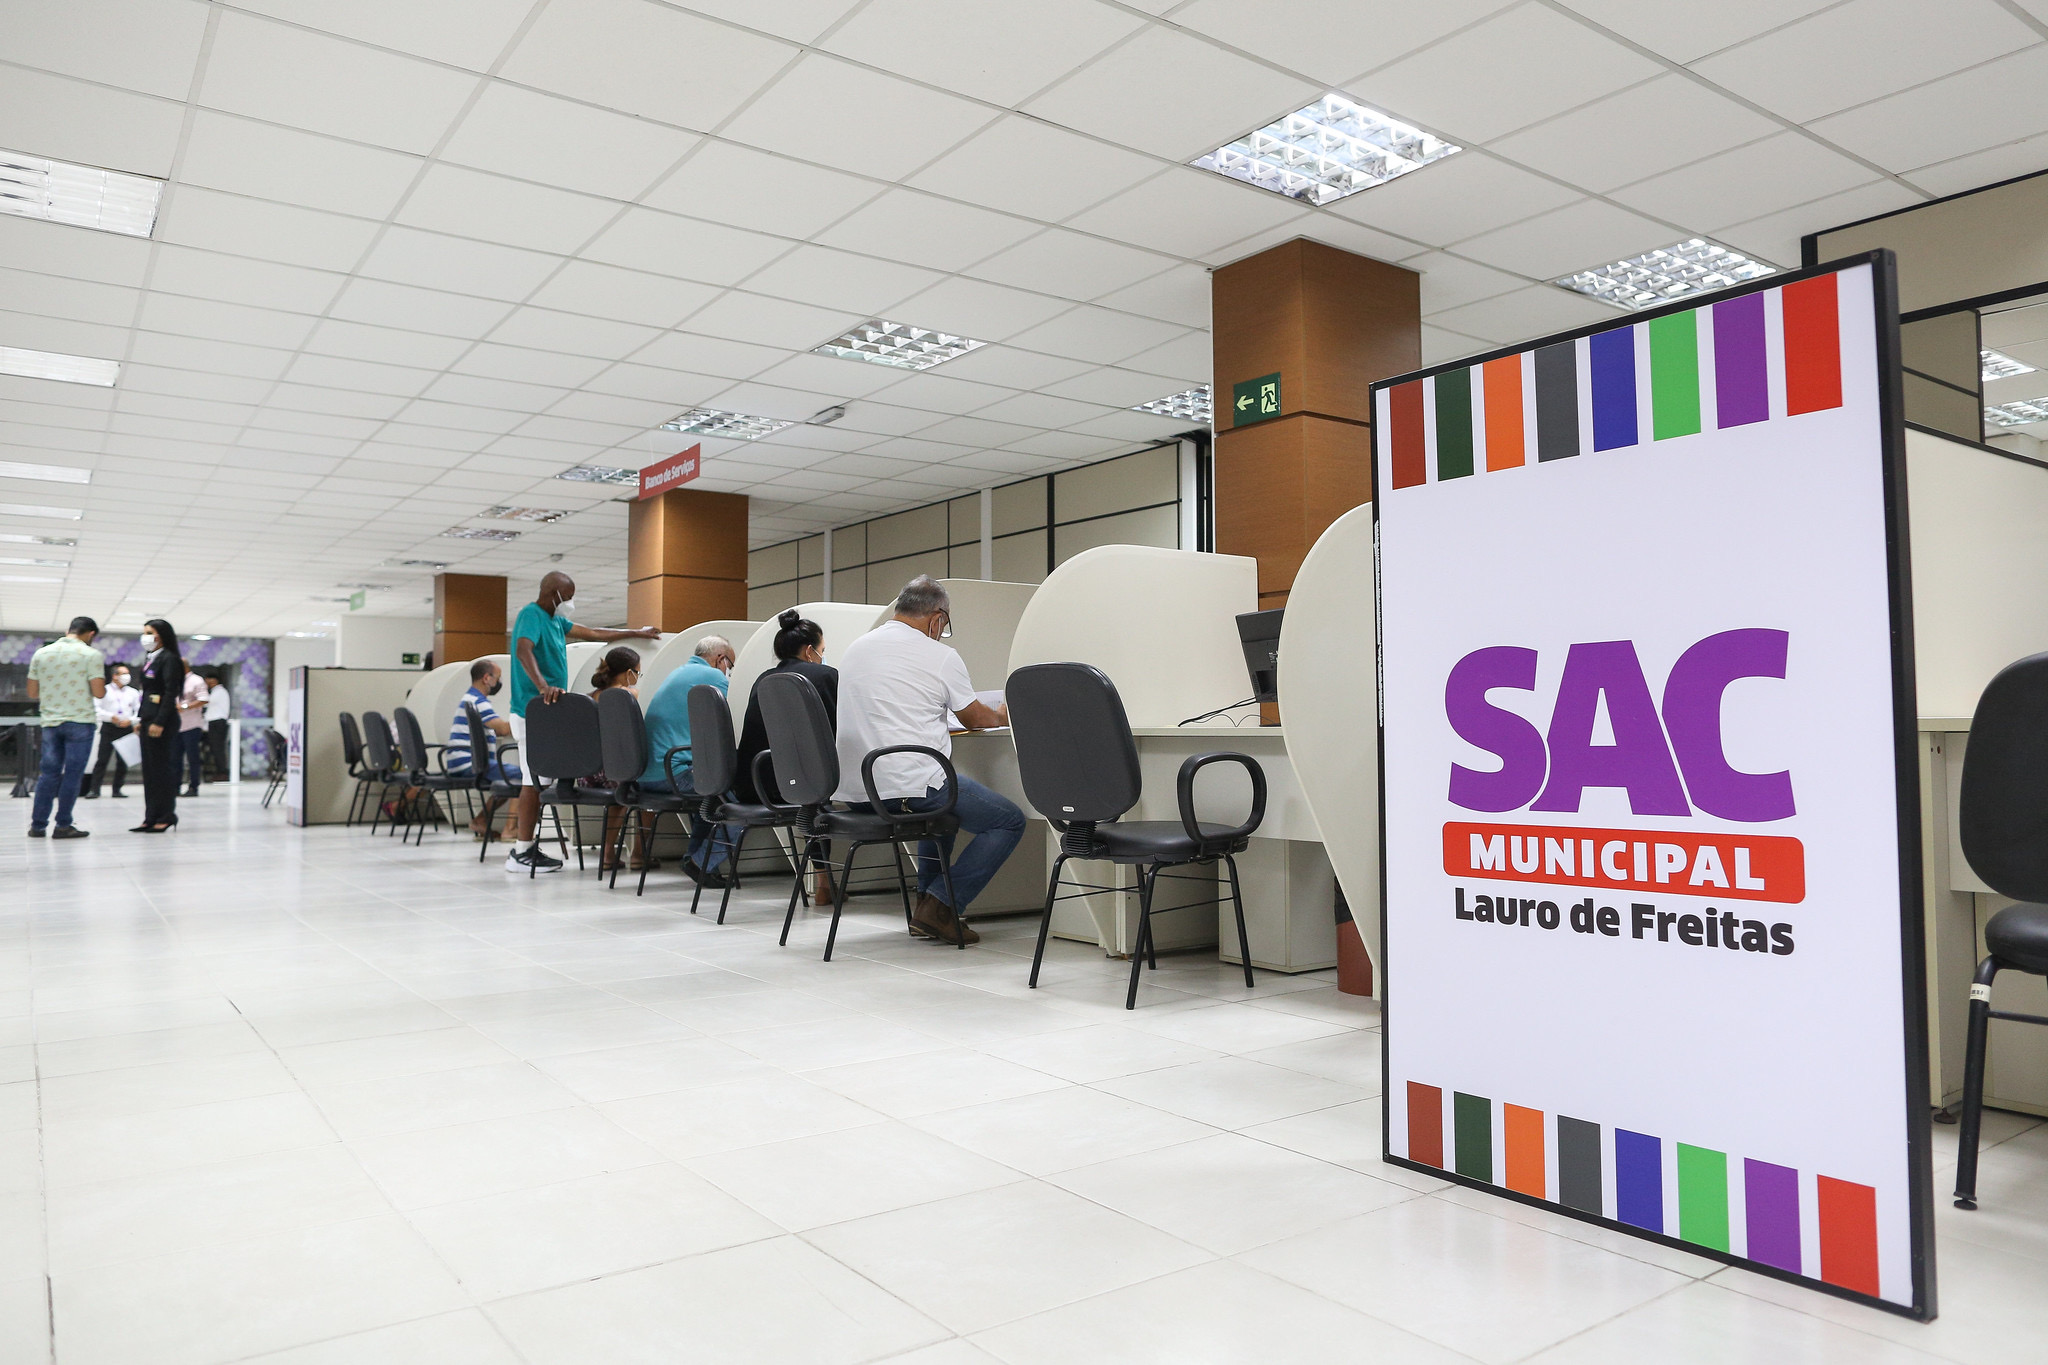  SAC Municipal de Lauro de Freitas registra mais de 18 mil atendimentos três meses após a inauguração